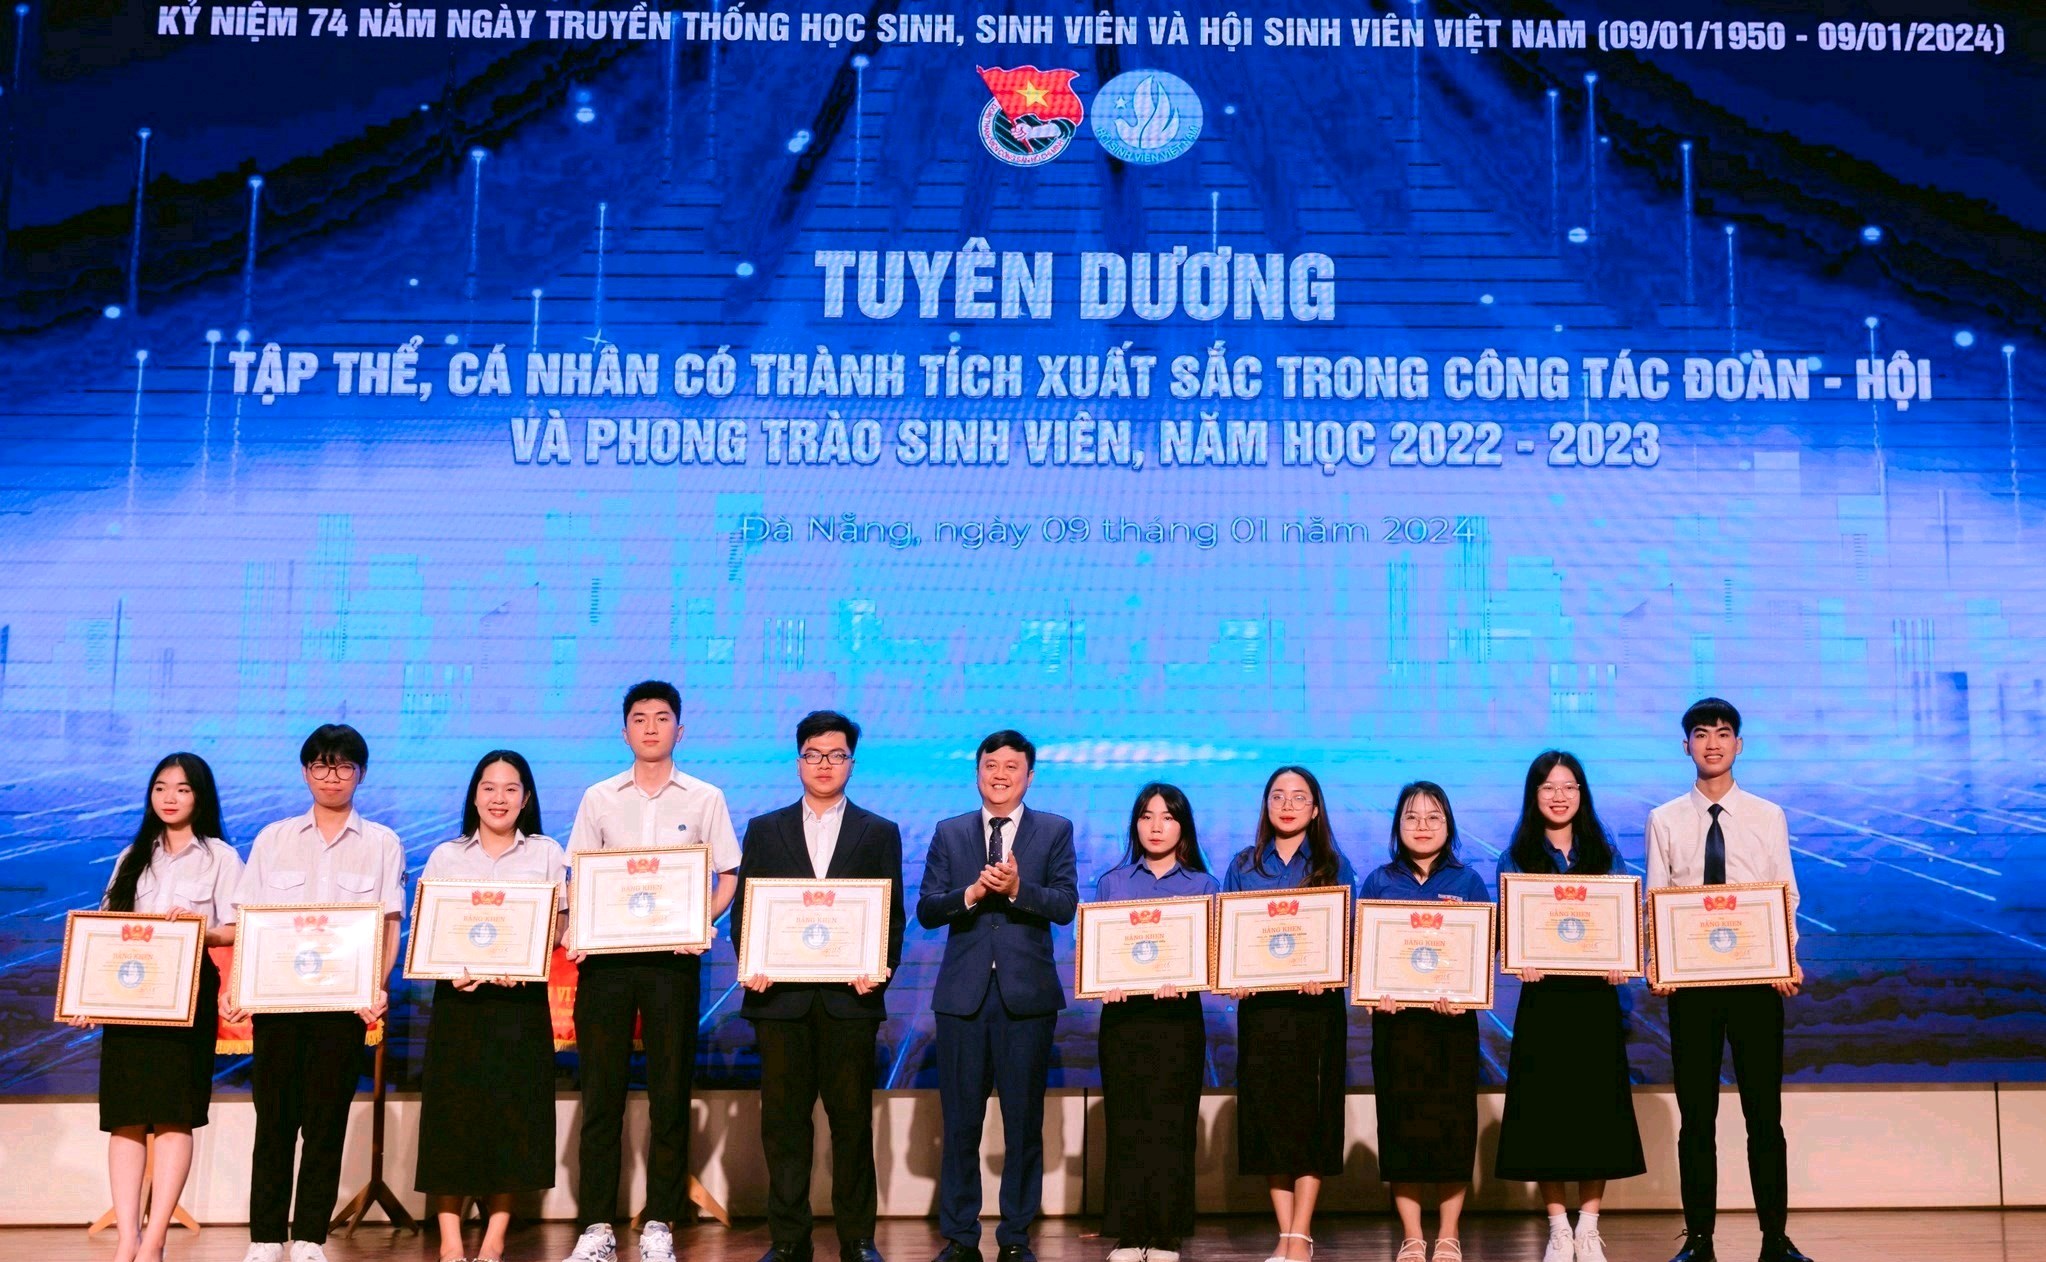 Sinh viên LHSS được tuyên dương trong ngày truyền thống Học sinh - Sinh viên và Hội Sinh viên Việt Nam